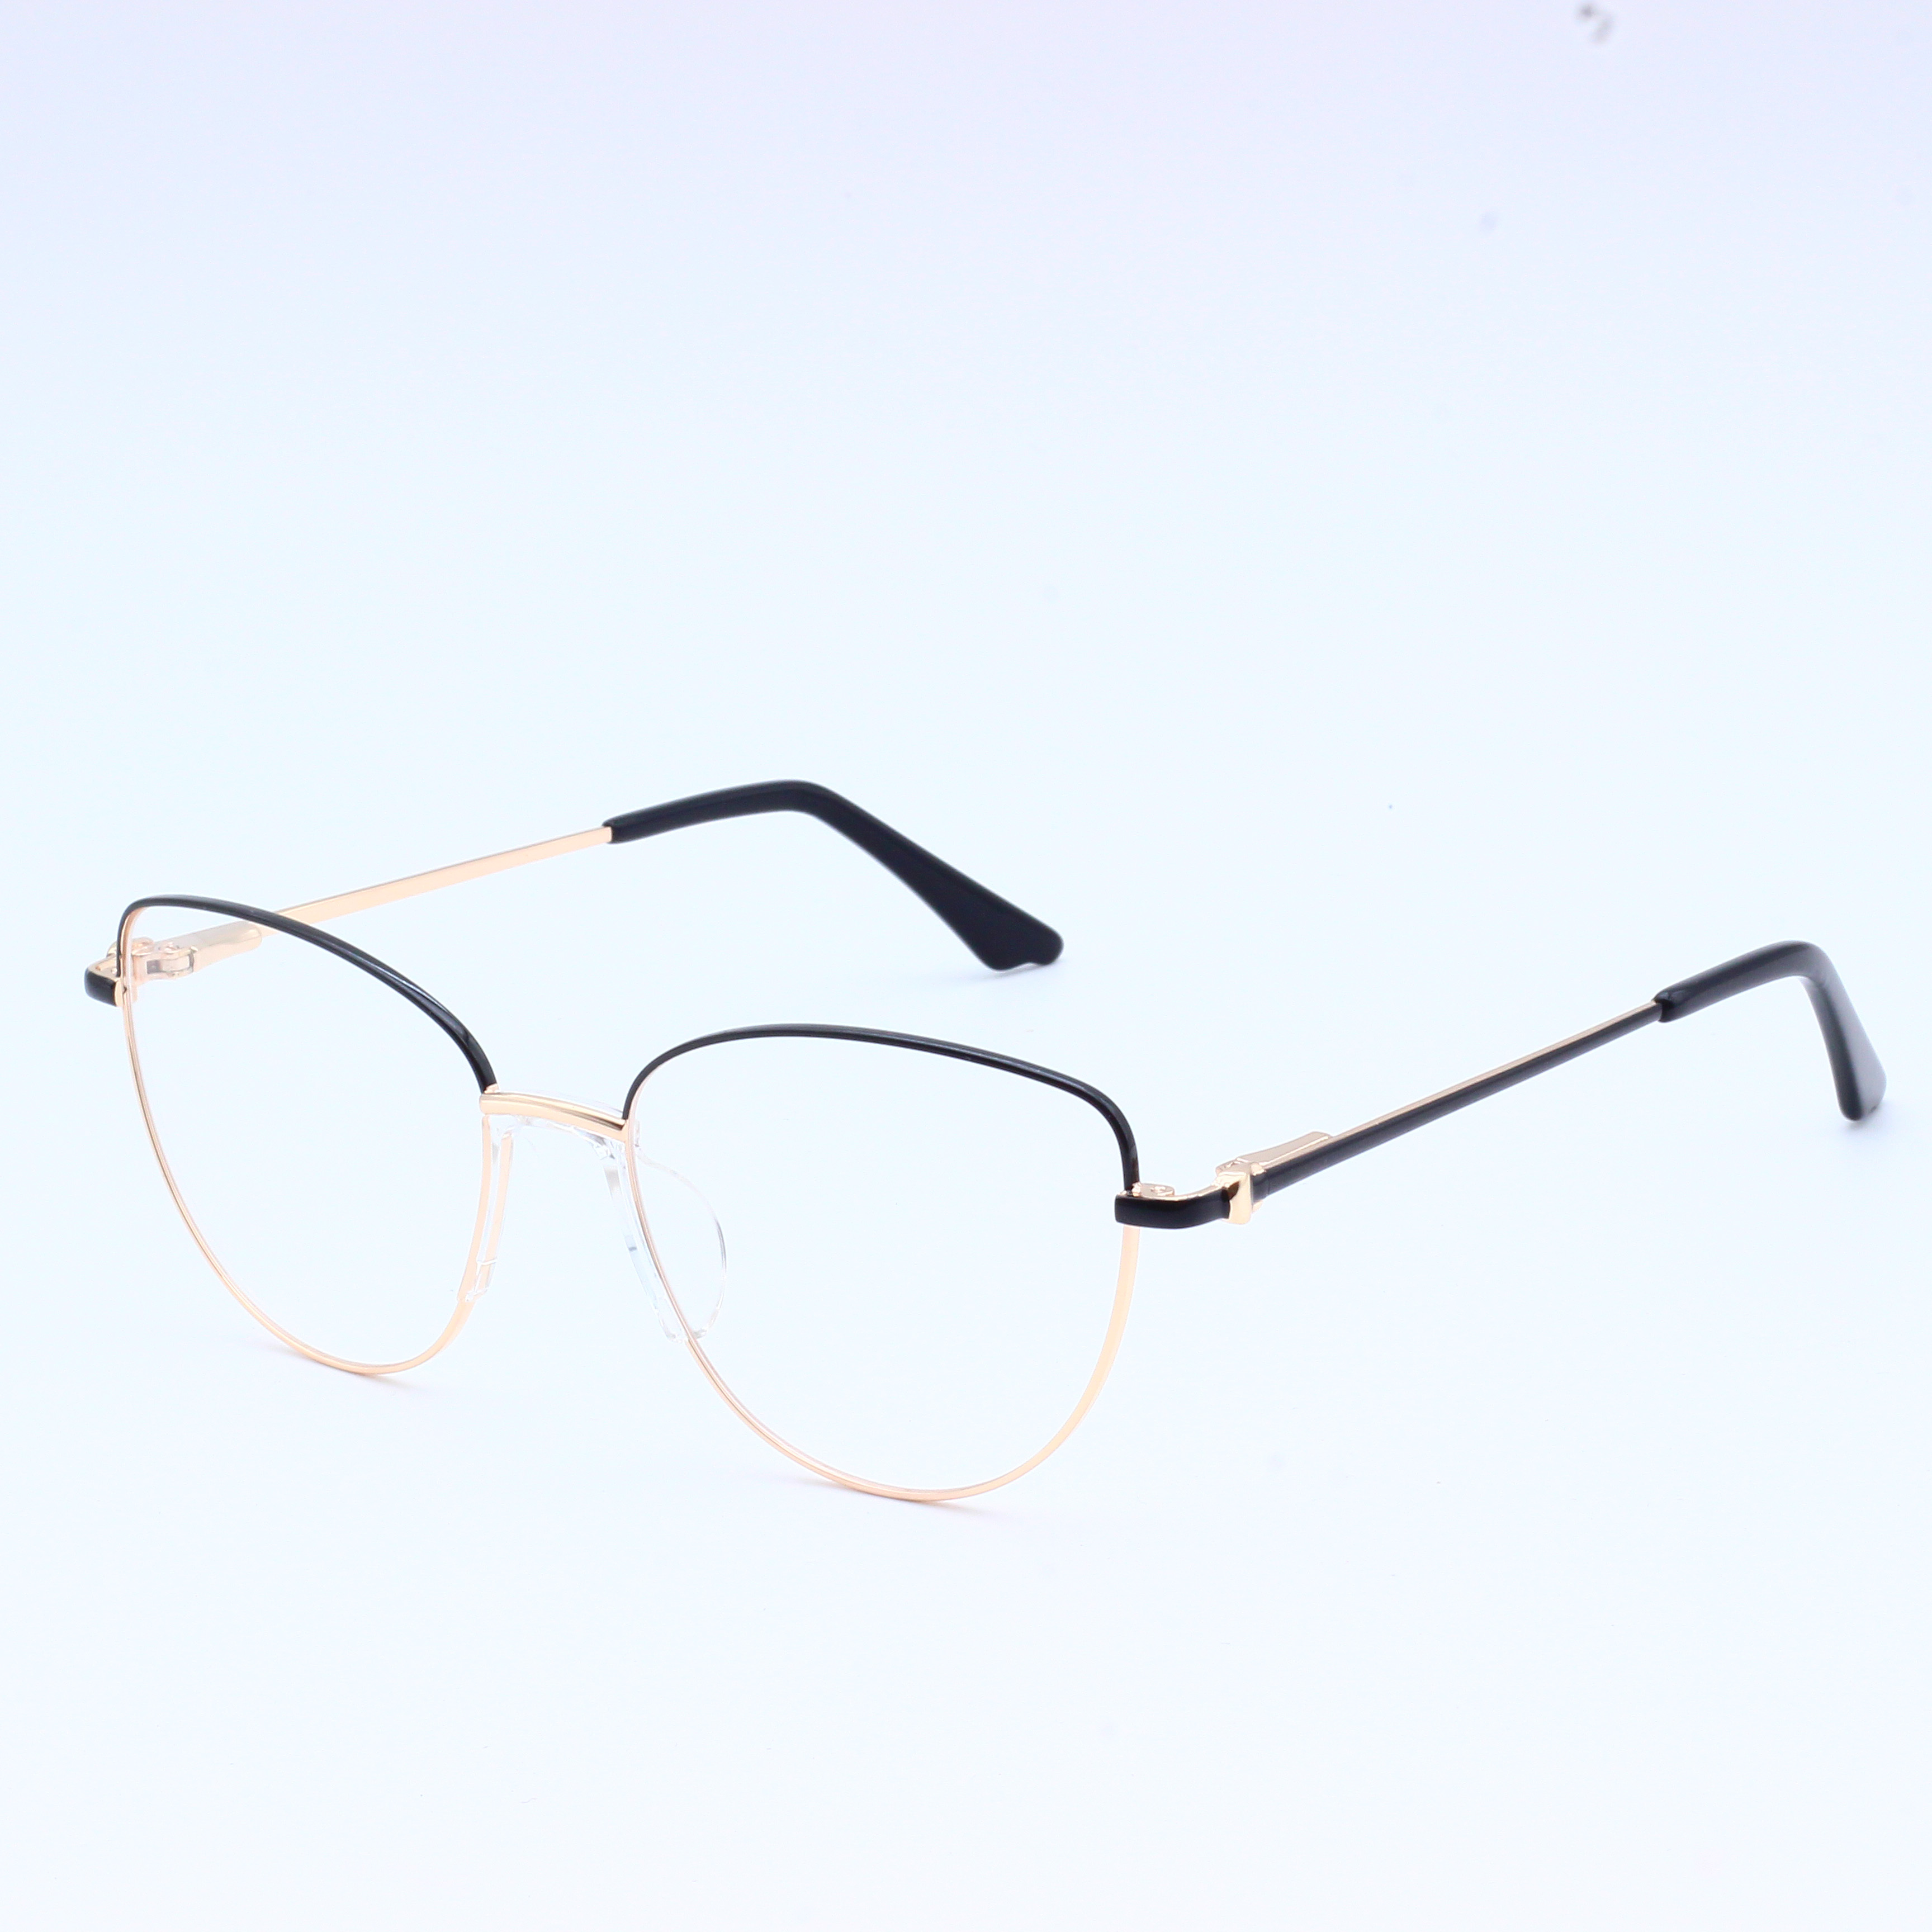 Cheap price frame metal eyewear frame stock ready Optical (5)